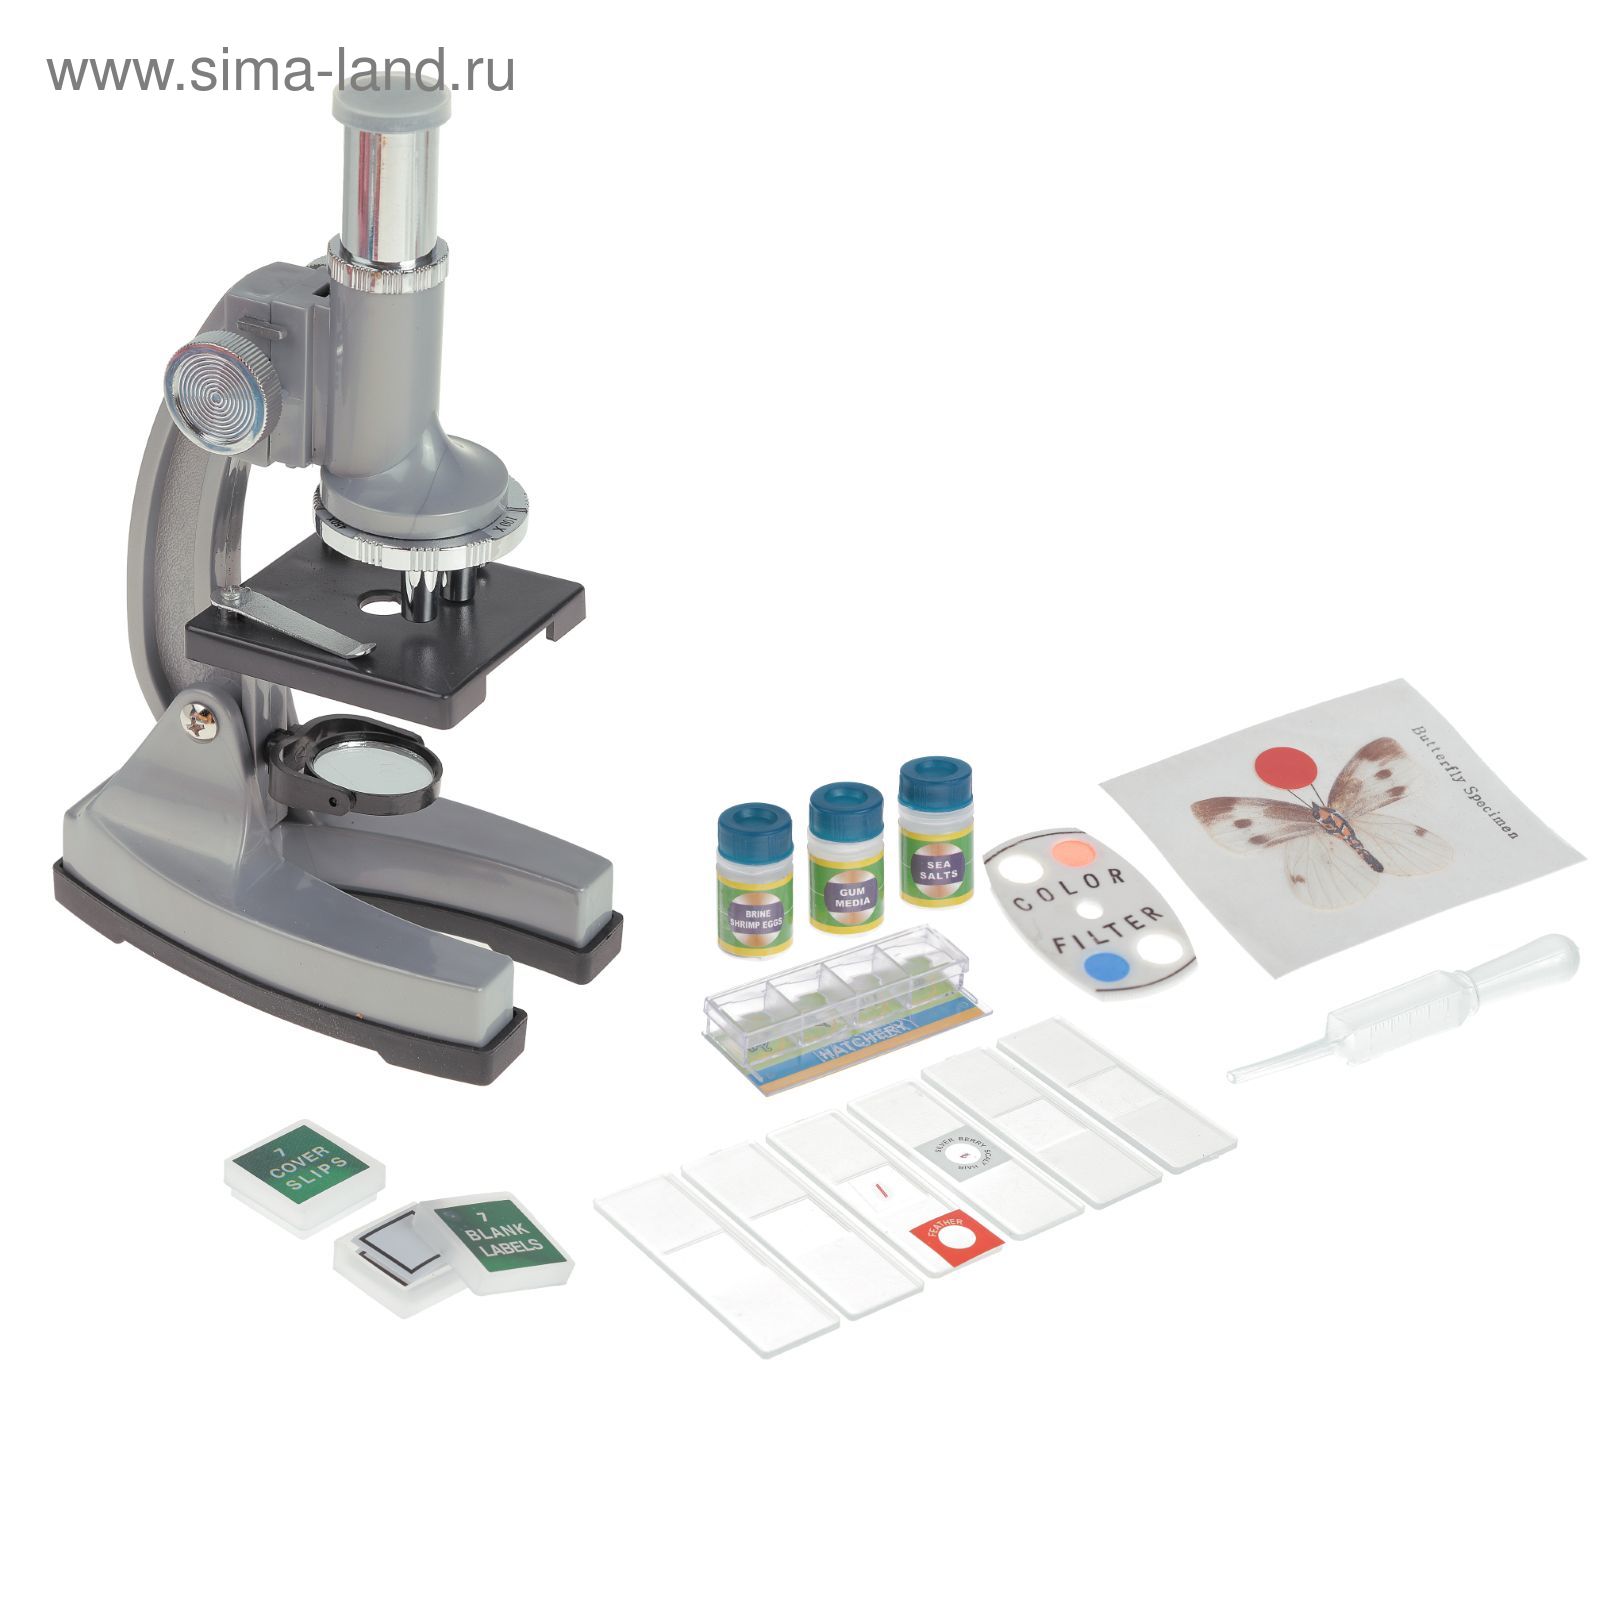 Микроскоп сувенирный "Лаборатория" 4 стекла, пинцет, 5 пленок, 5 листов бумаги, жидкость - индикатор, цвета МИКС